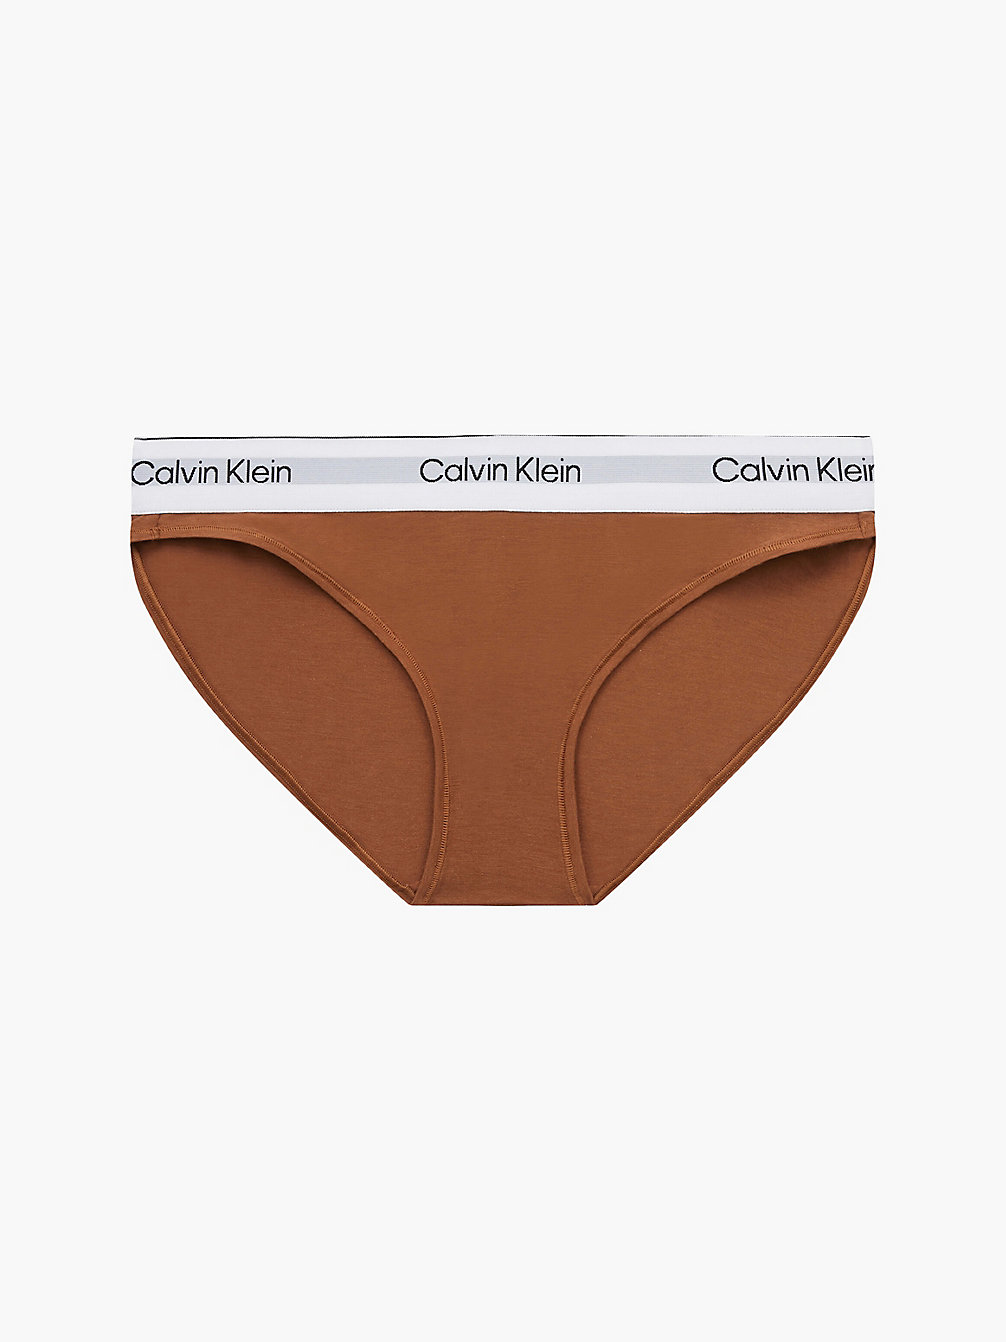 WARM BRONZE > Слипы - Modern Cotton > undefined Женщины - Calvin Klein